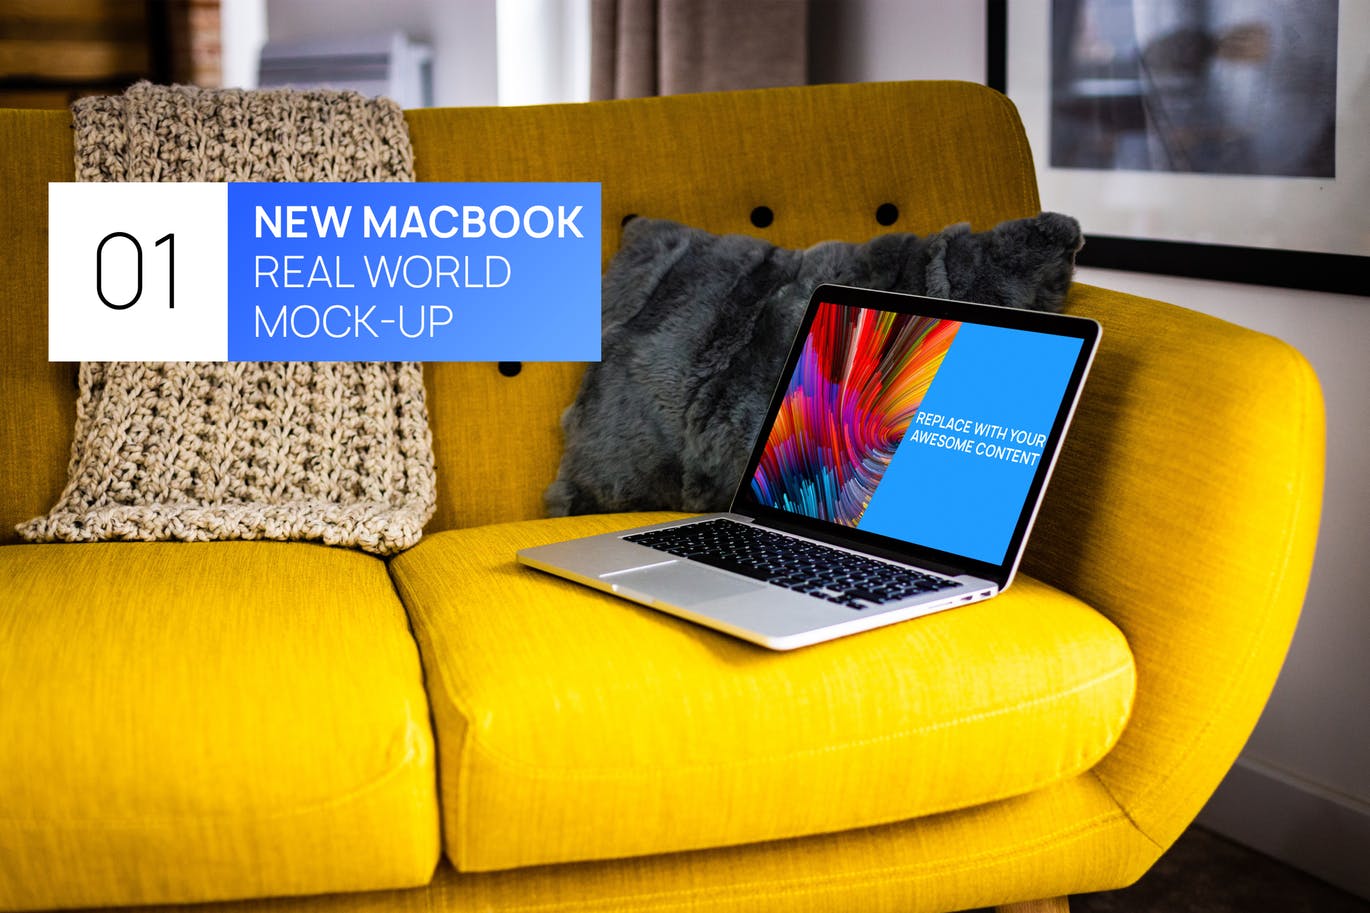 布艺沙发场景MacBook视网膜屏演示蚂蚁素材精选样机模板 MacBook Retina on Bright Sofa Real World Mock-up插图